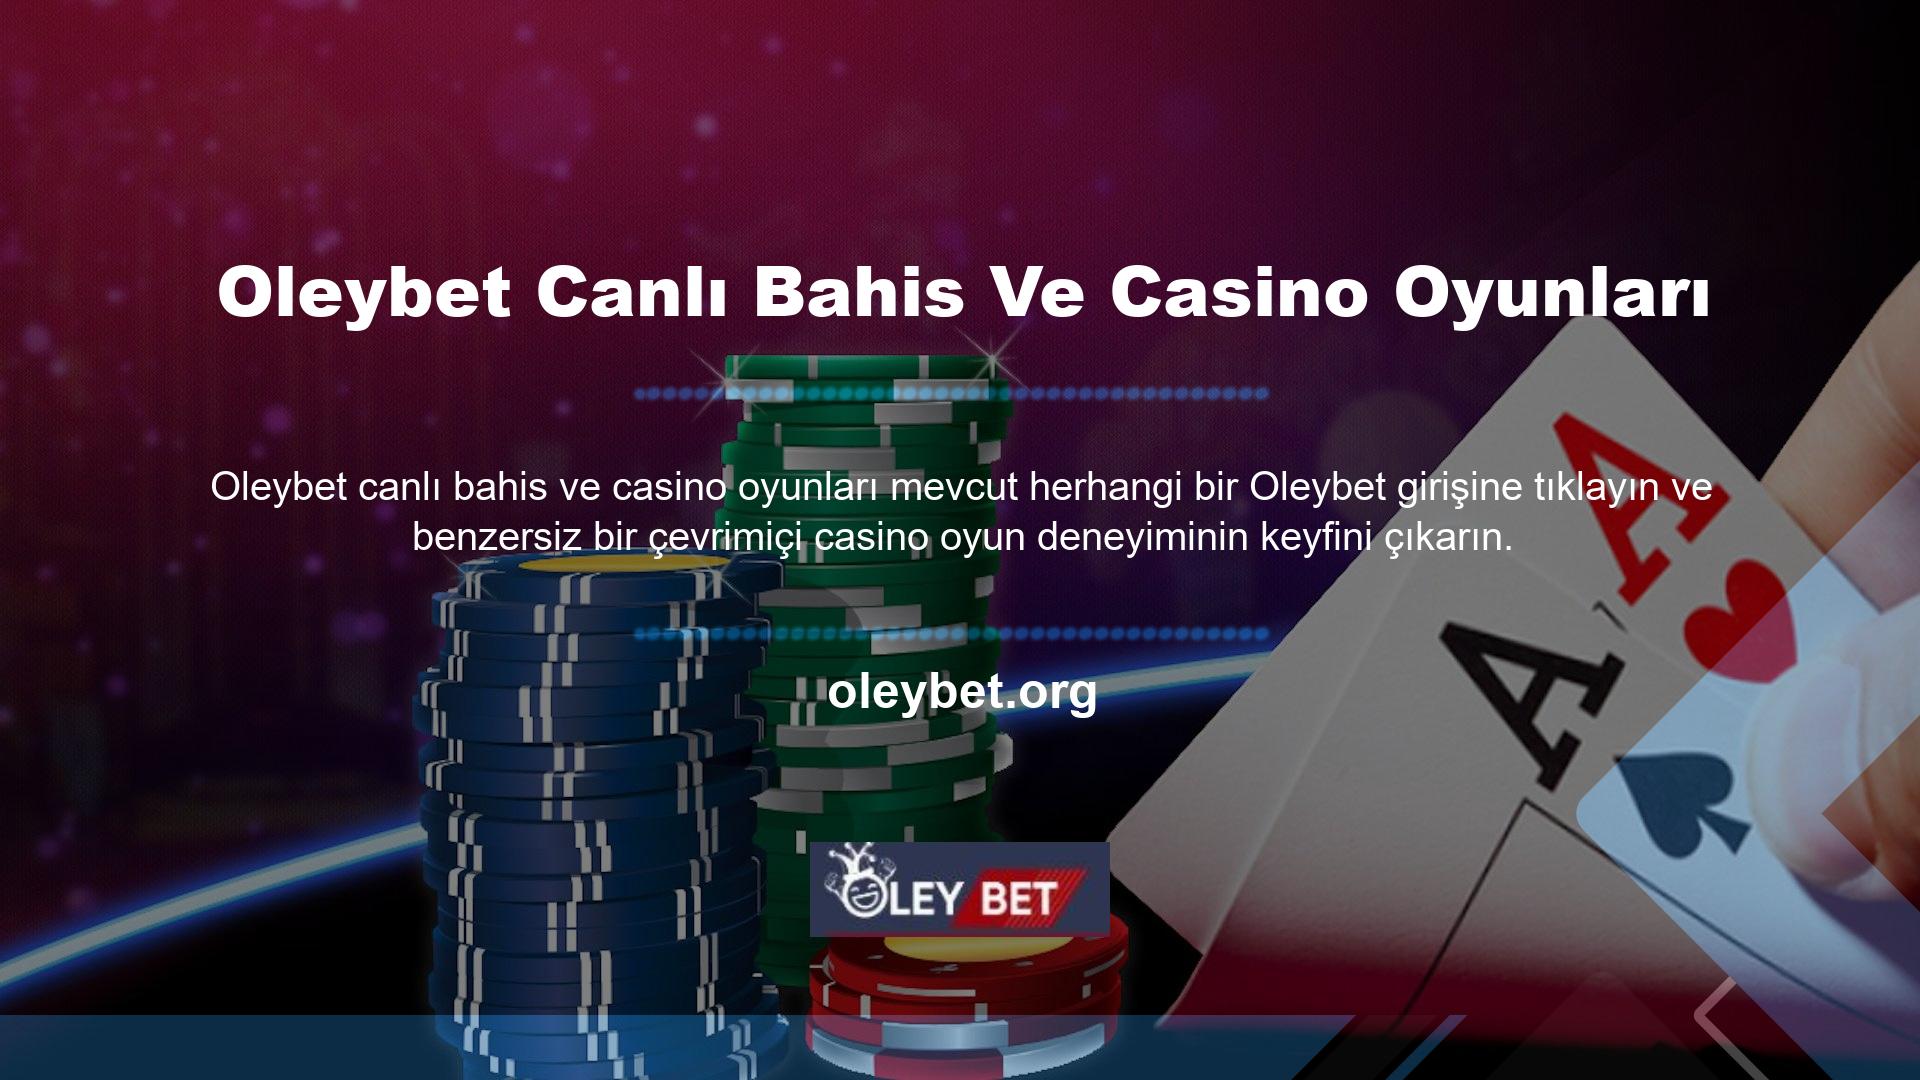 Oleybet canlı bahis ve casino oyunlarında kazanma oyun deneyimi beklentilerinizi tam anlamıyla karşılayacaktır